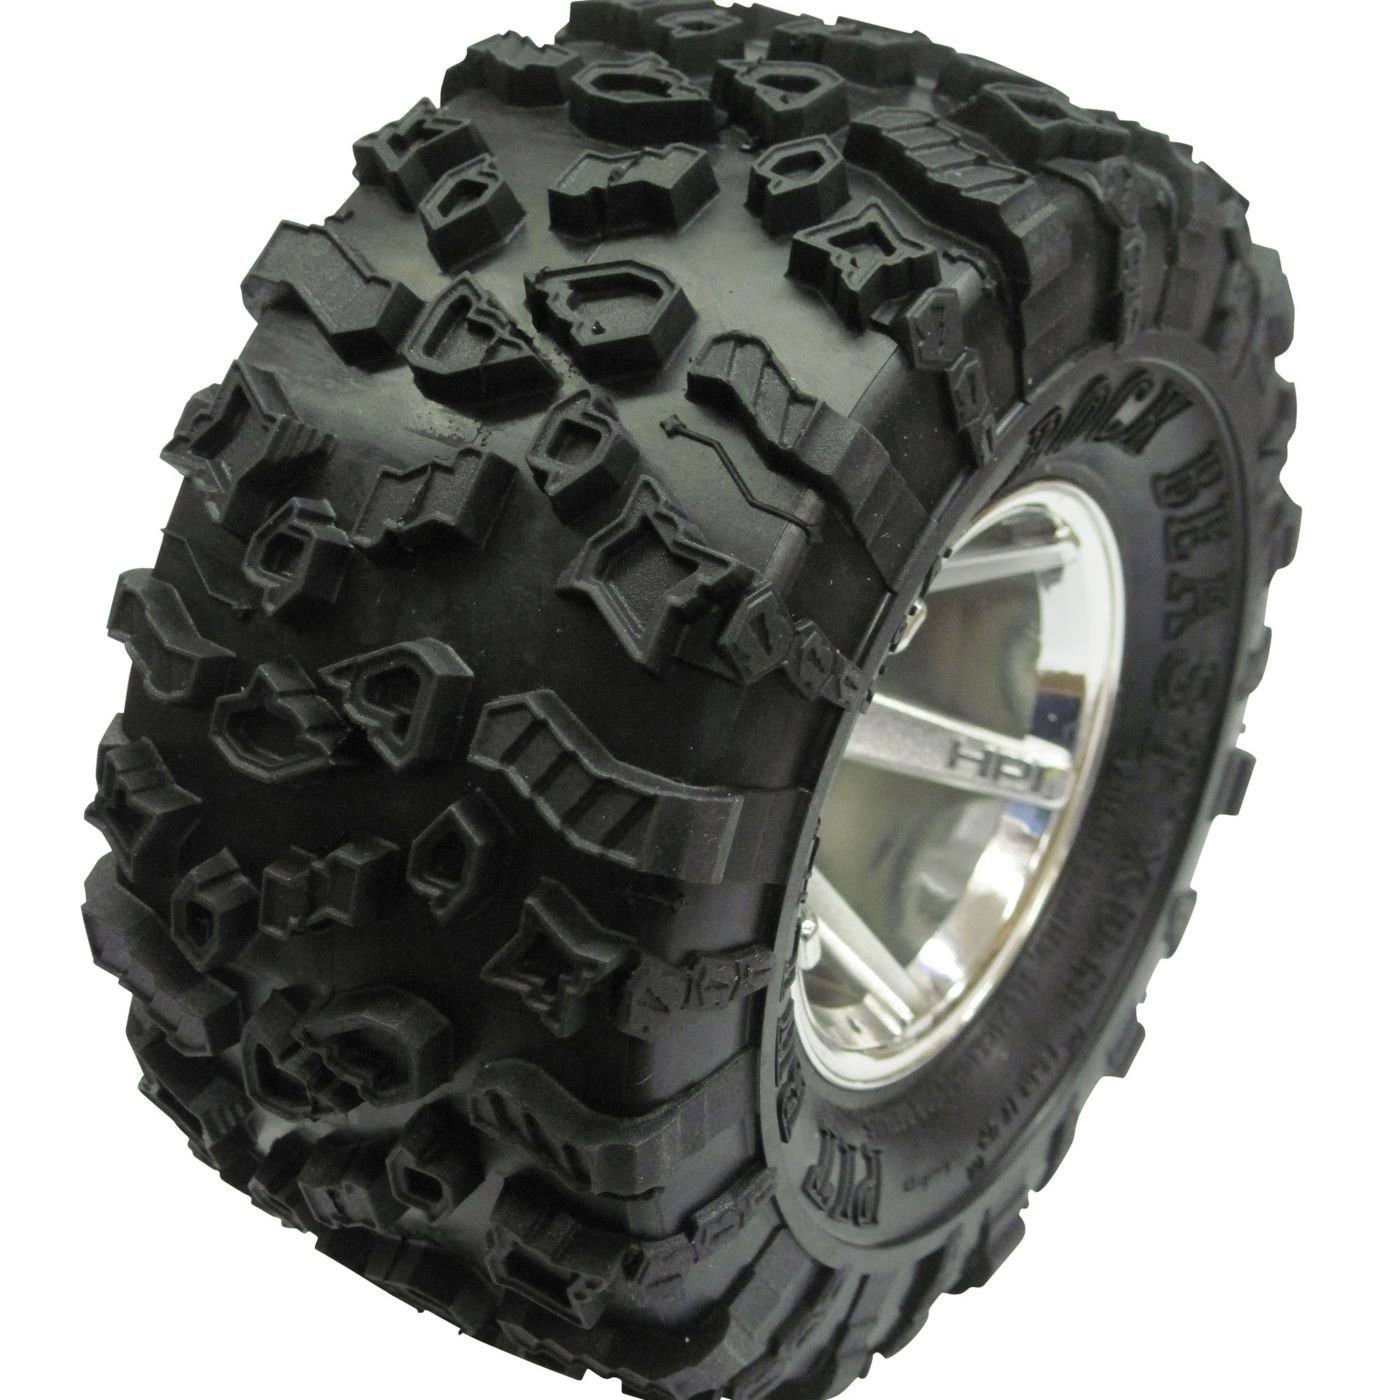 Pit Bull Rock Beast XOR 2.2 Crawler No Foam Tires - 2pk